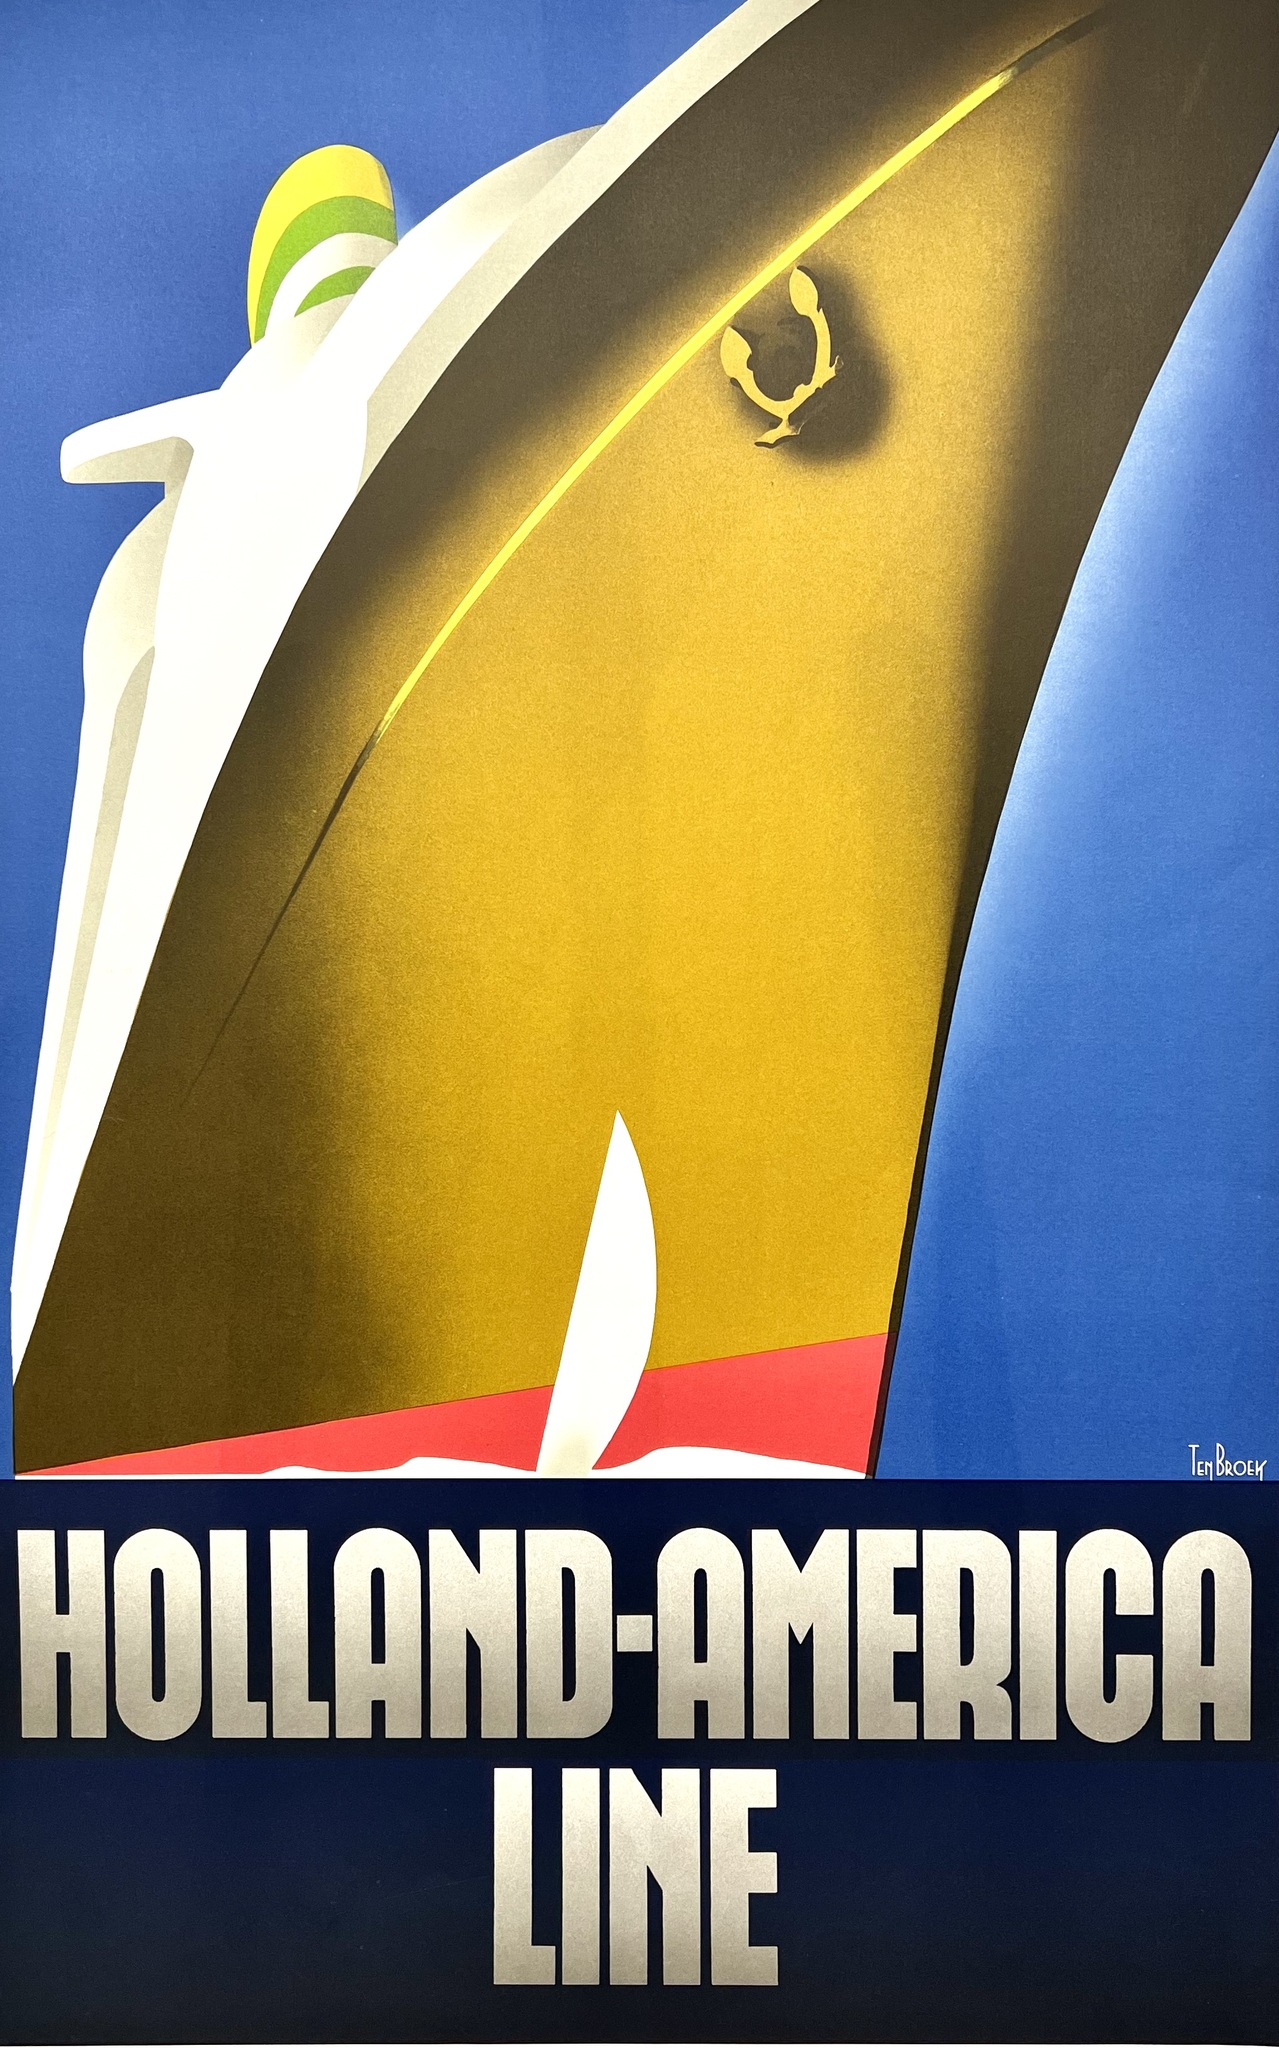 Willem Ten Broek, "Holland America Line" Grafisk affisch. Daterad 1982. 59,5x92 cm